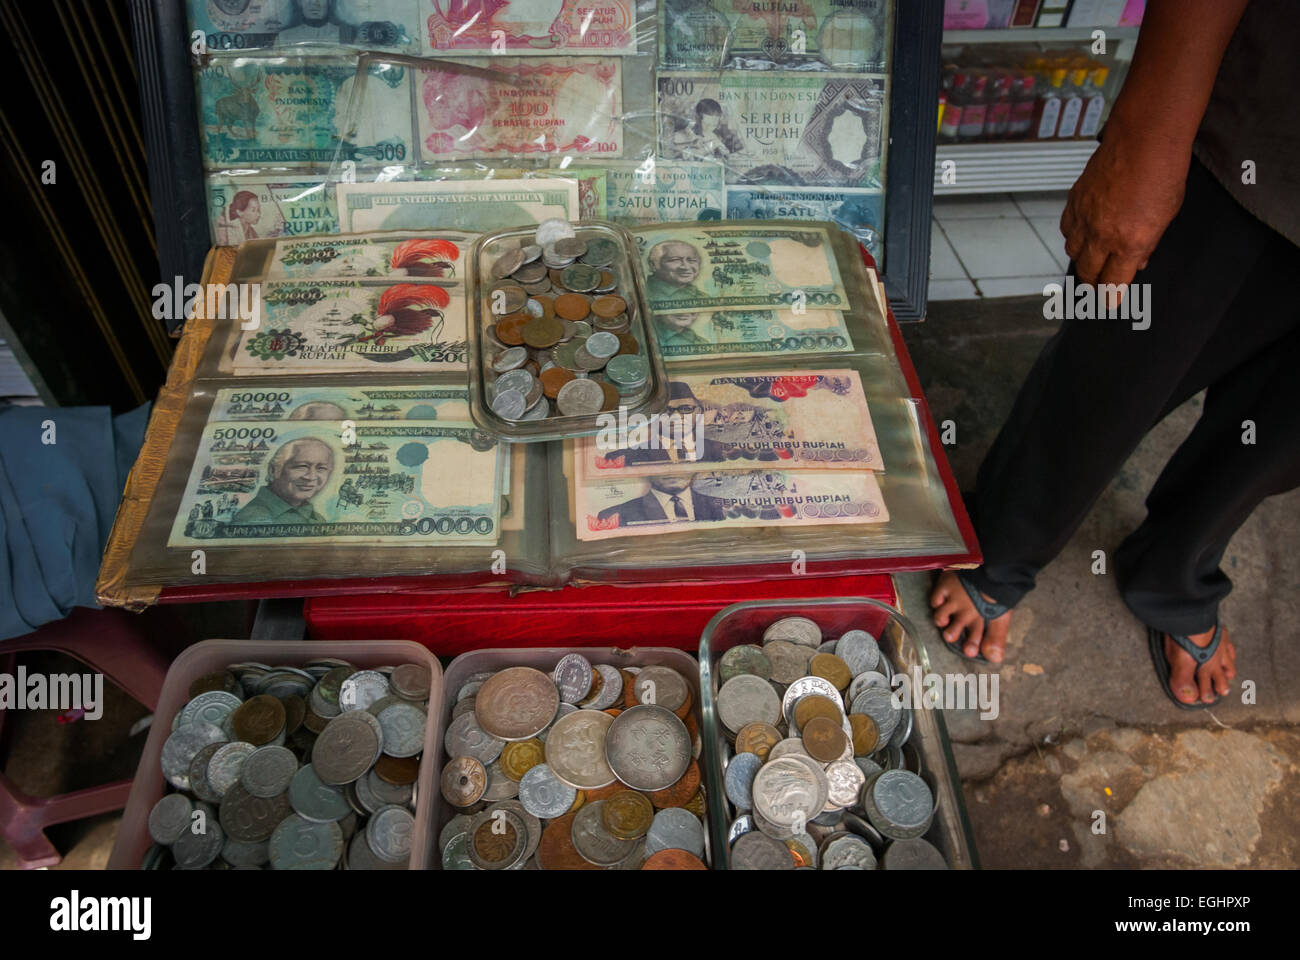 Le vecchie banconote indonesiane (ritirate, scadute) vengono vendute come oggetti da collezione in un mercato stradale a Jatinegara, Giacarta Est, Giacarta, Indonesia. Foto Stock